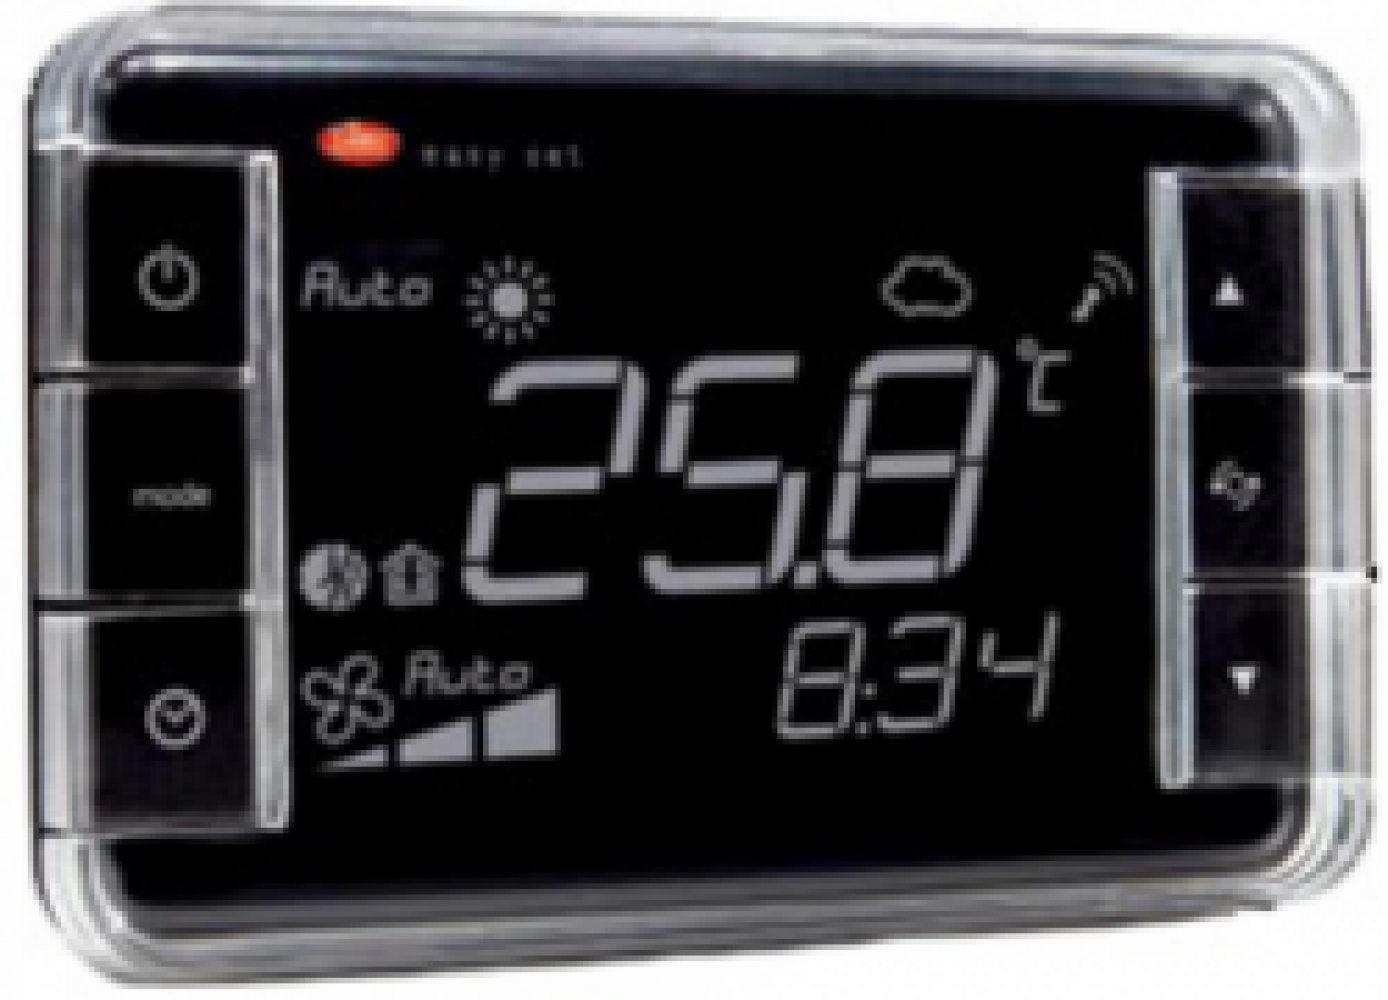 EW01TA2100 Термостат Easyset для e-dronic, контроль температуры, корпус черного цвета, &quot;прямое&quot; отображение